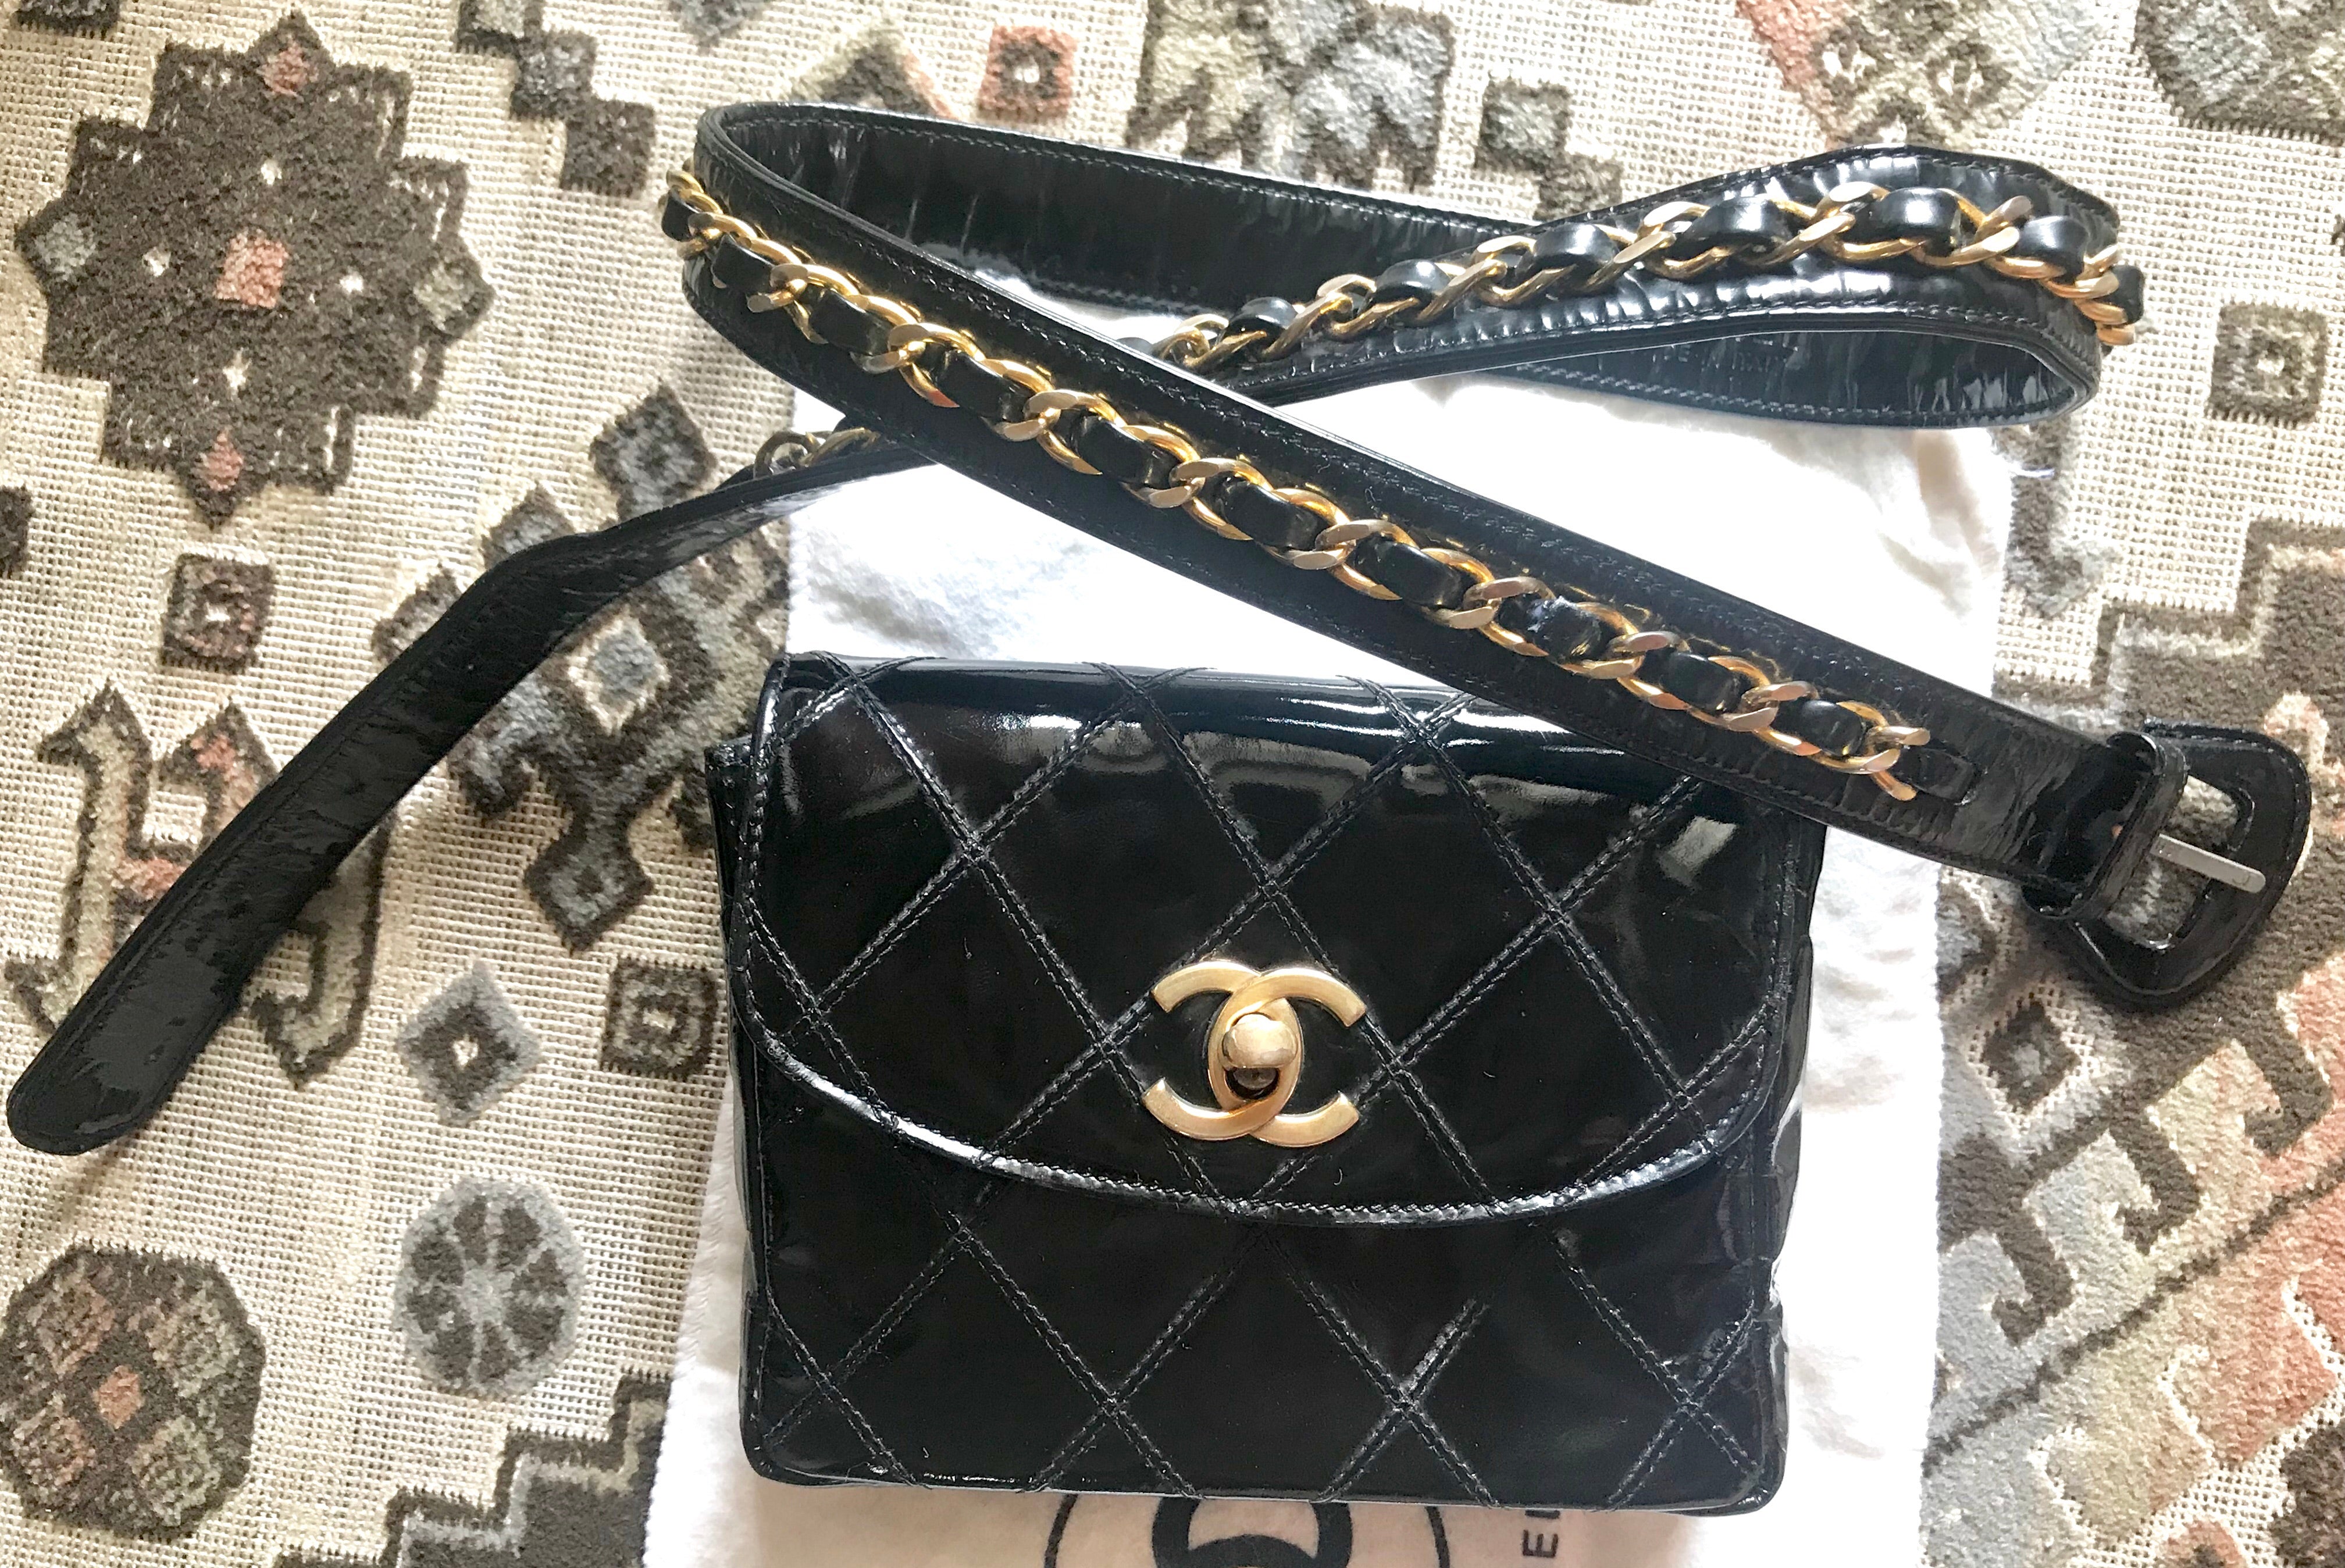 90s vintage chanel bag black